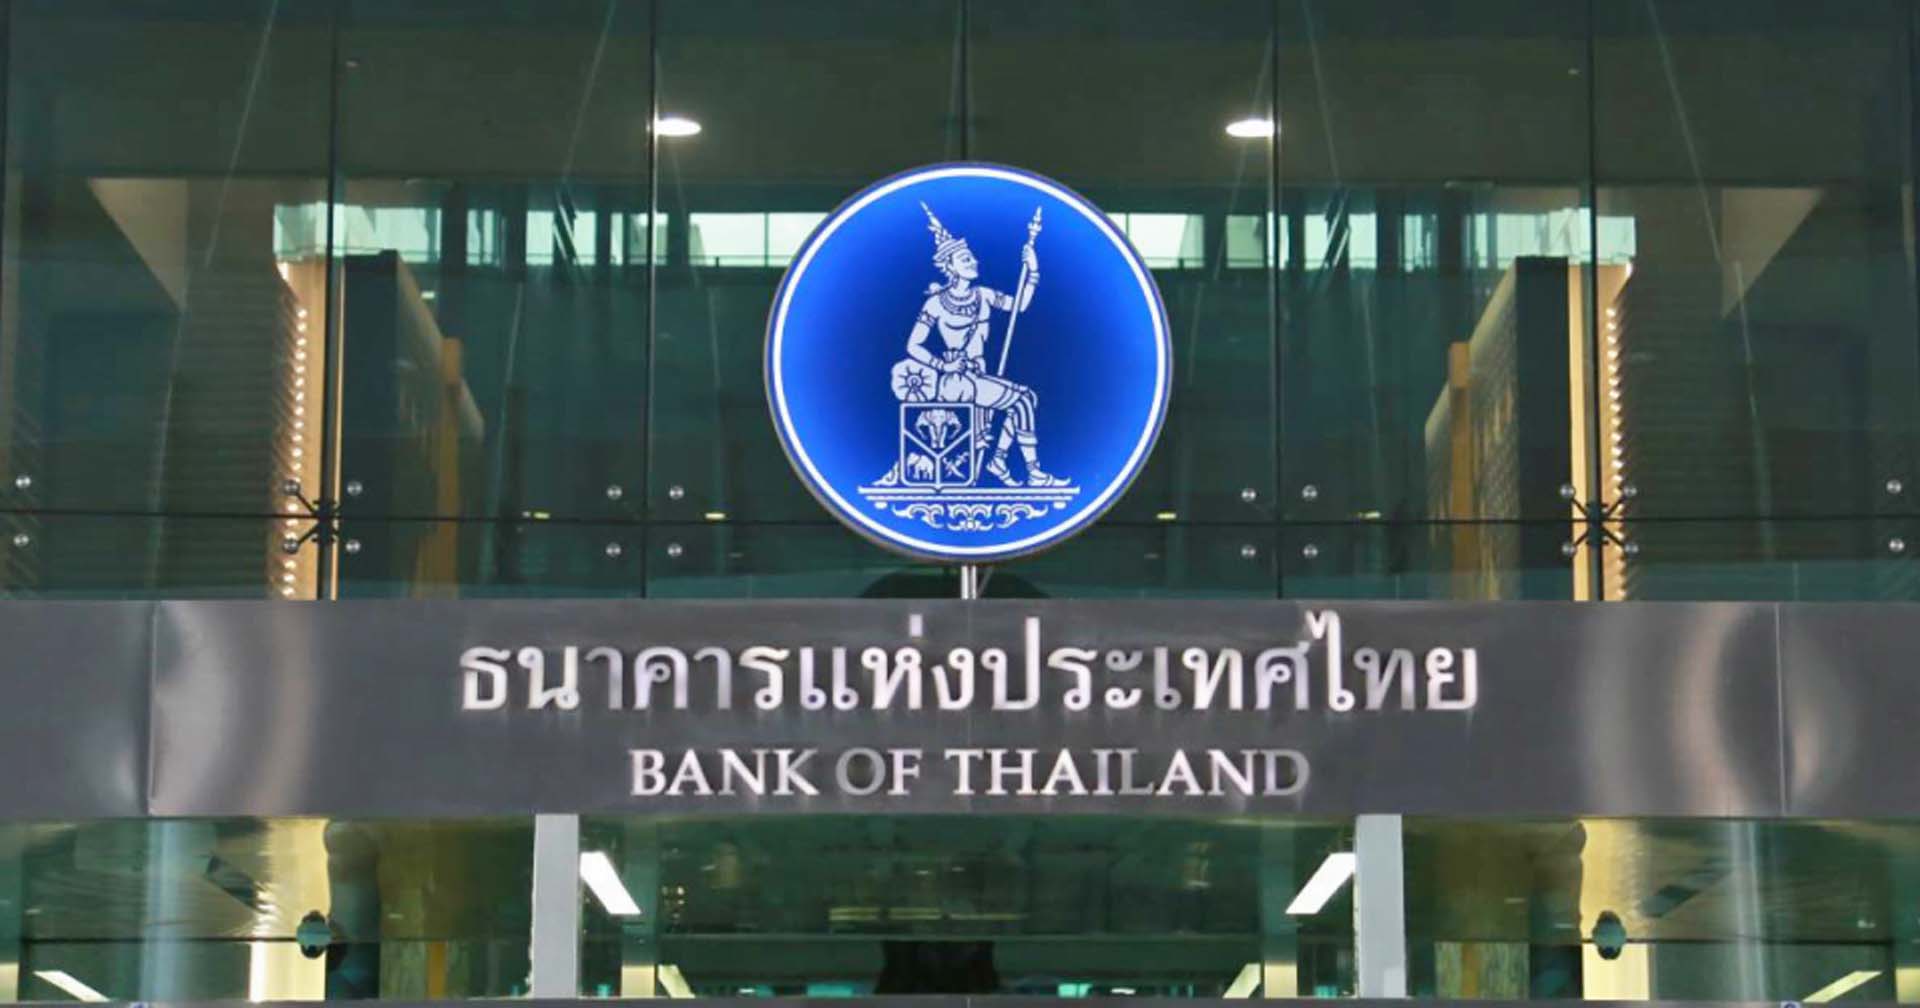 ธปท. ชี้แจงกรณี SVB ล้ม ไม่ส่งผลกระทบต่อระบบการเงินไทย – ค่าเงินบาทแข็งค่าตามคาด